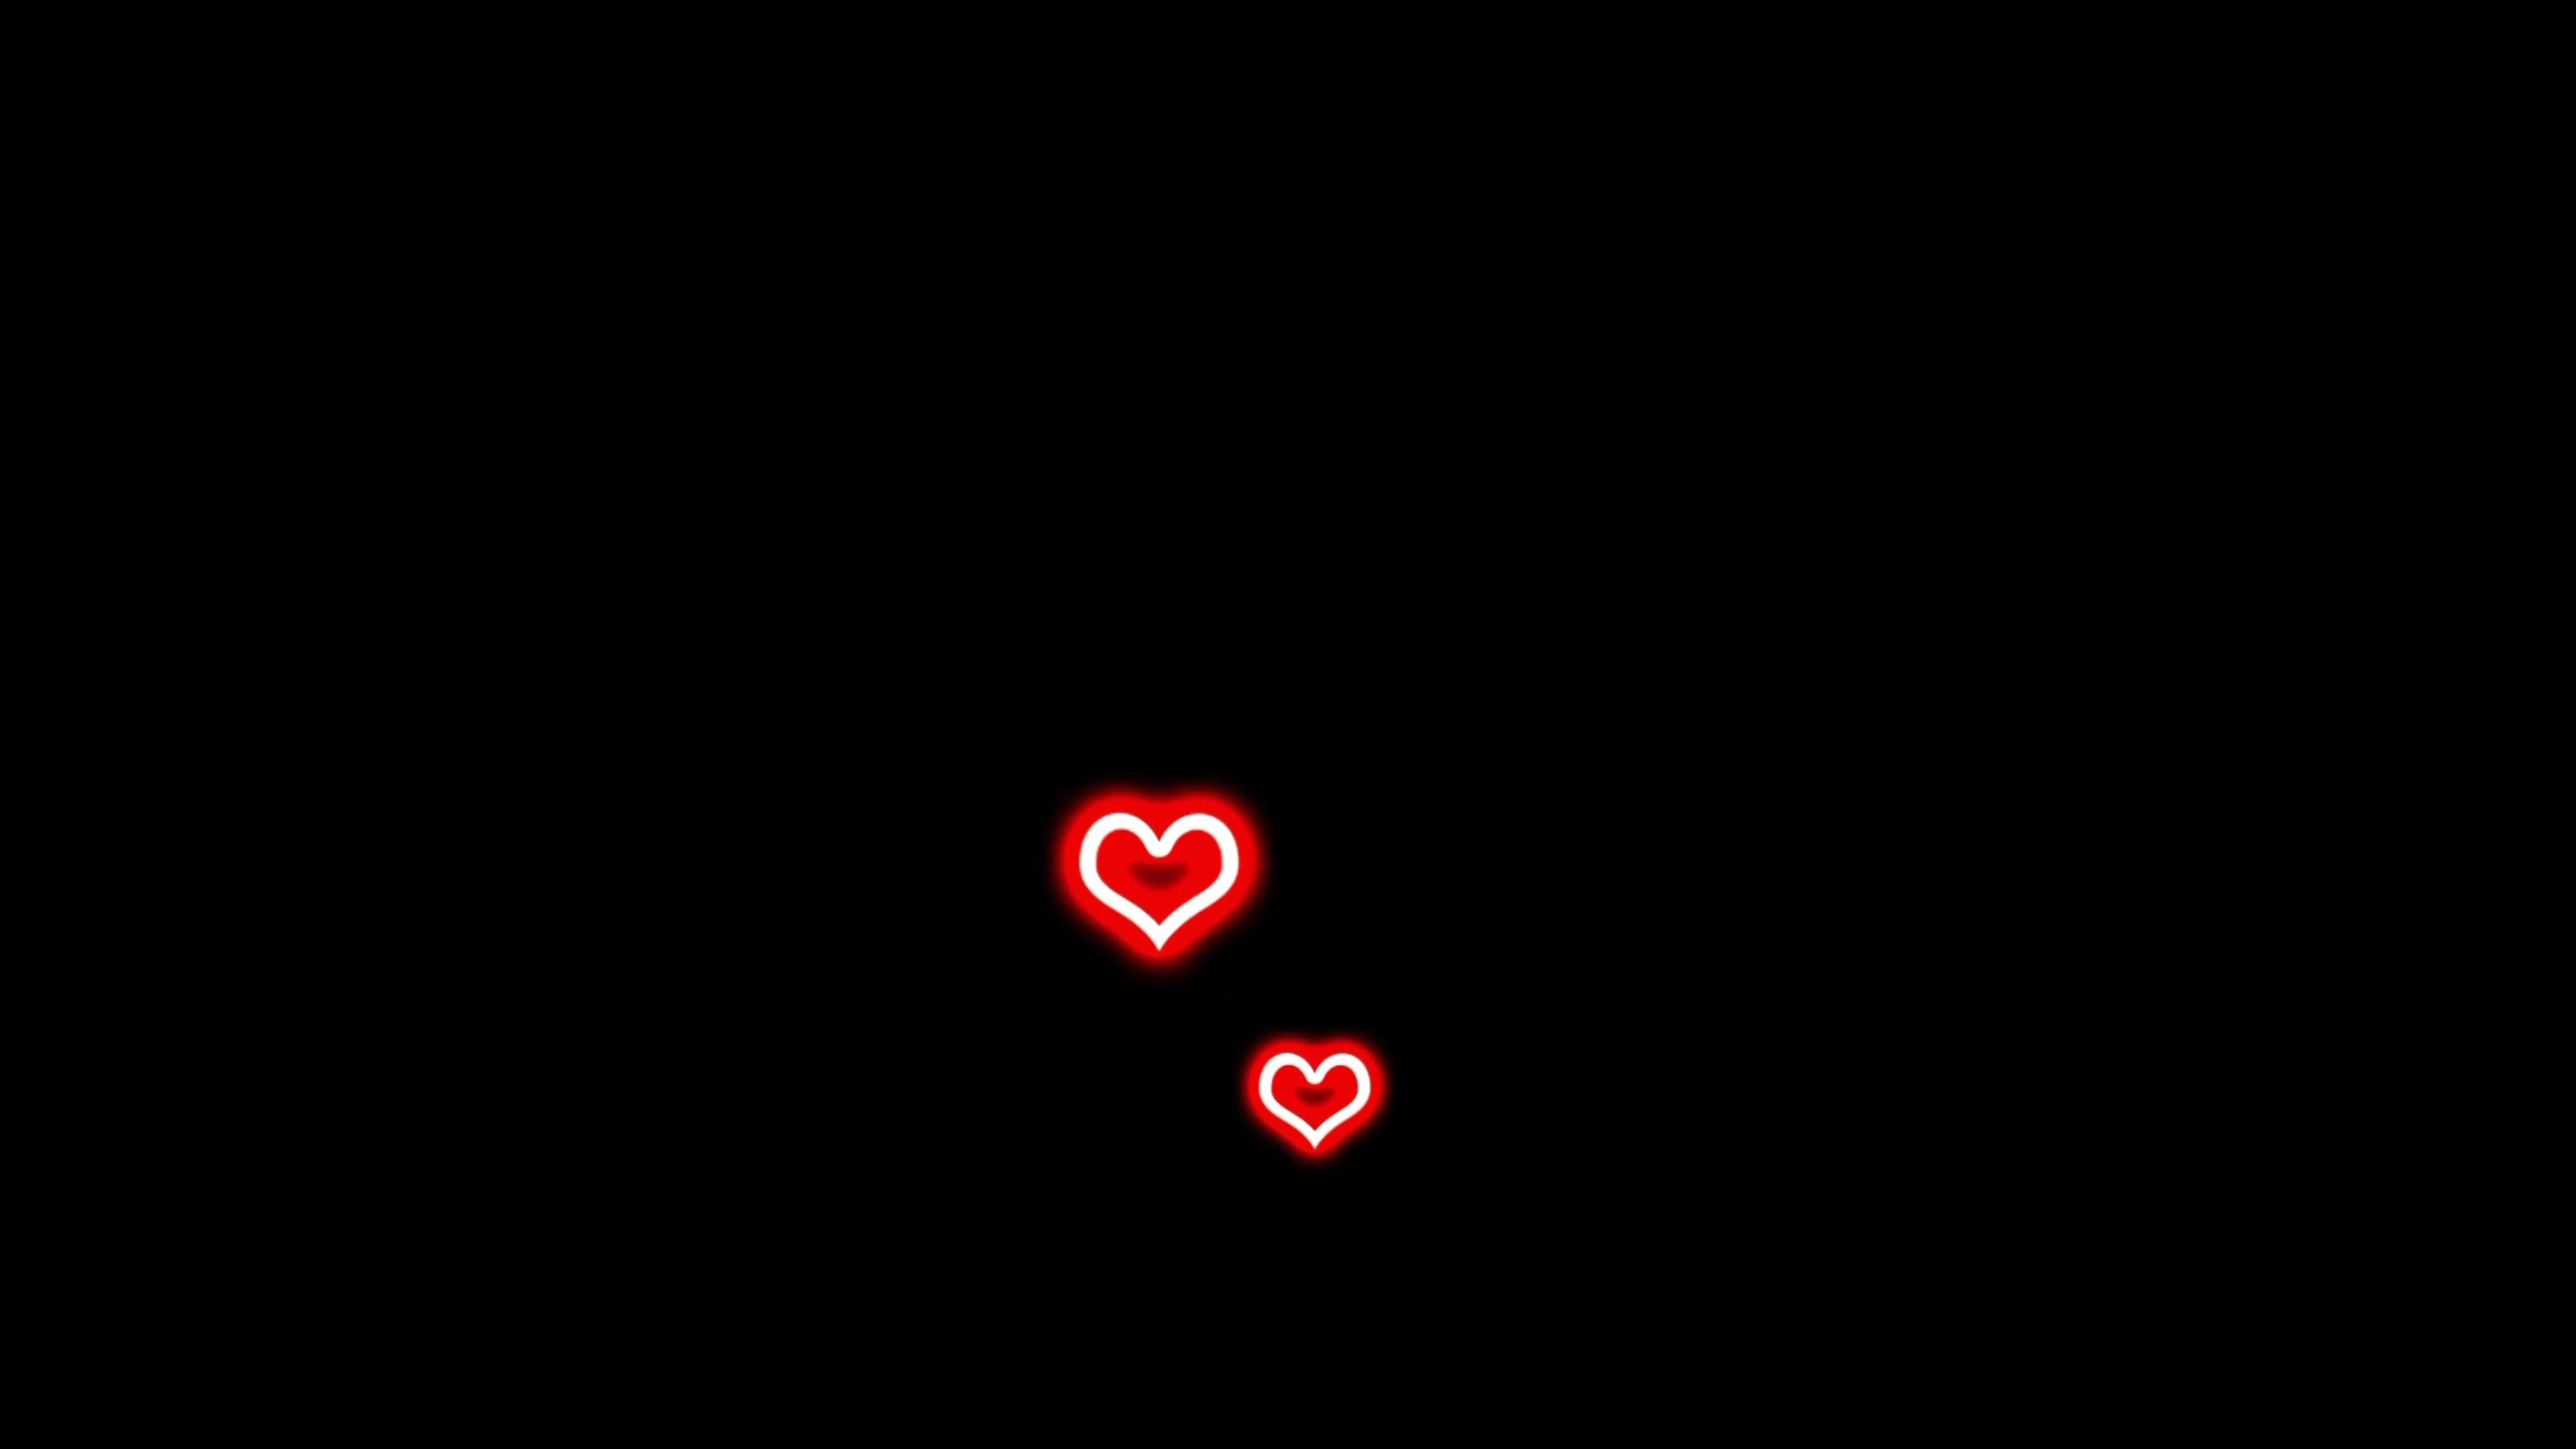 Xuất hiện trước mắt bạn là một hình động tuyệt đẹp với trái tim đỏ neon lung linh trên nền đen. Hãy xem chi tiết để cảm nhận được sự tuyệt vời của trái tim đang đập mạnh mẽ trong không gian đen tối.